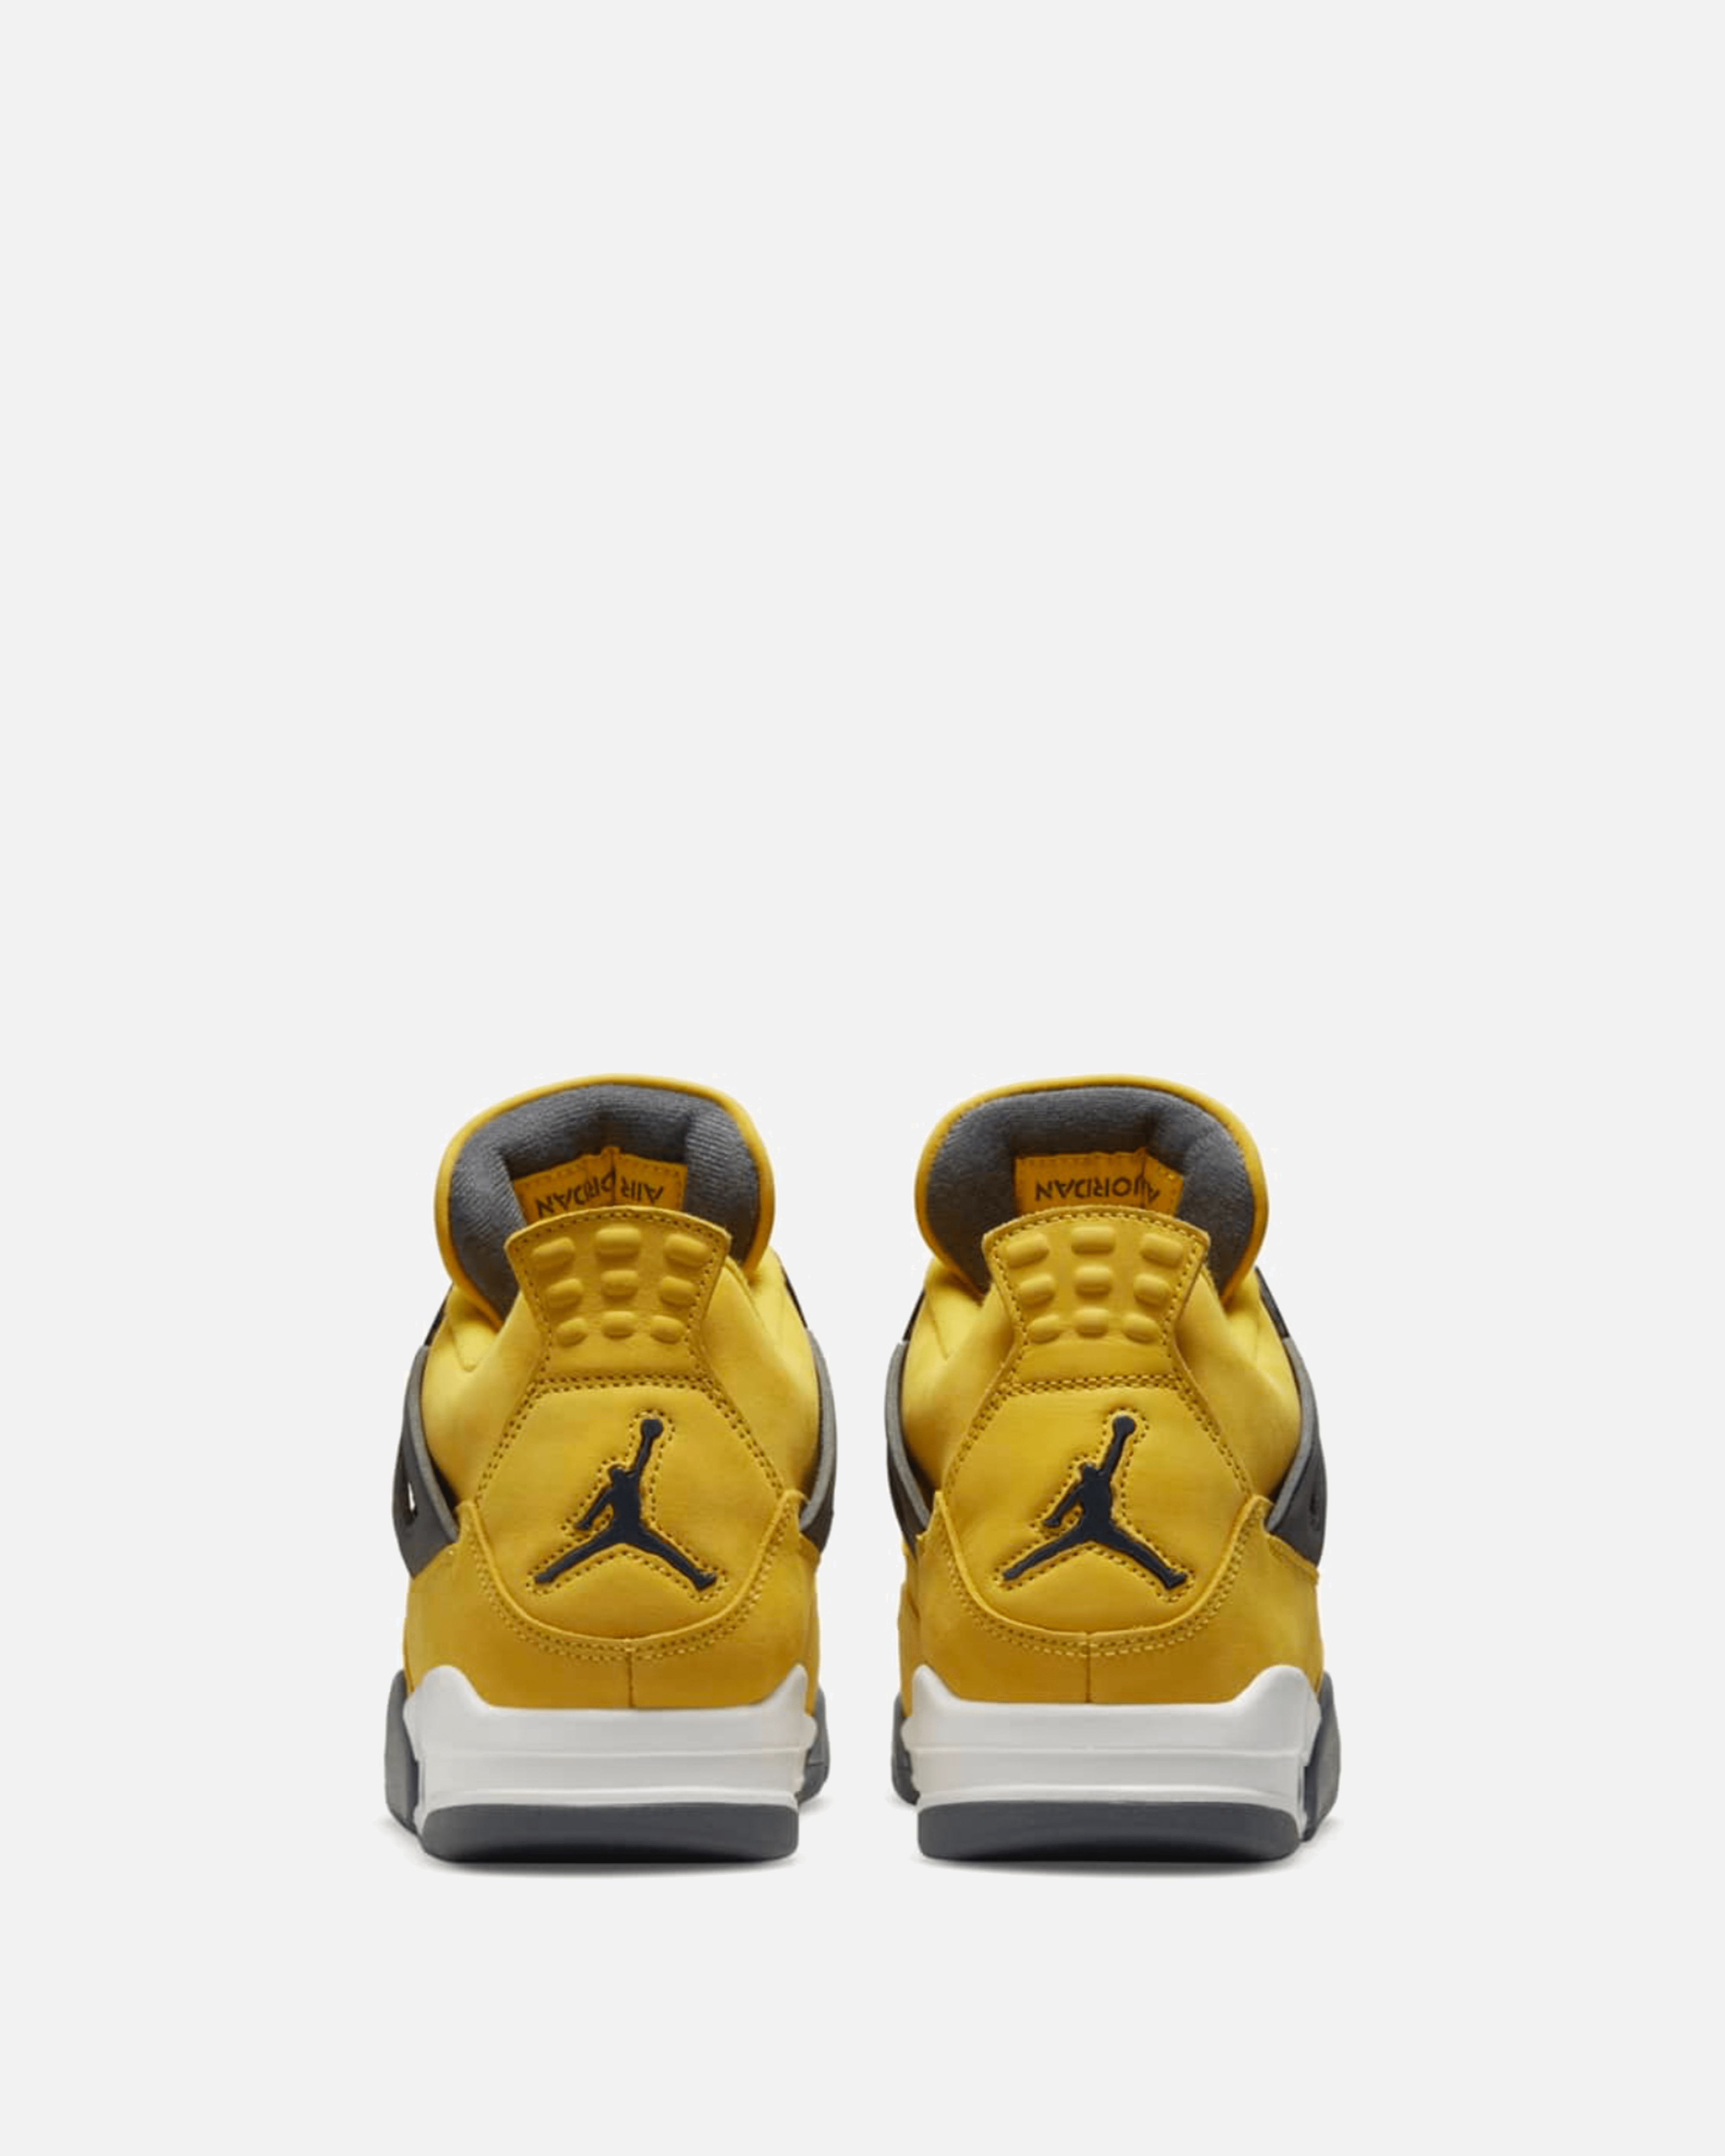 Air Jordan 4 'Tour Yellow' – SVRN